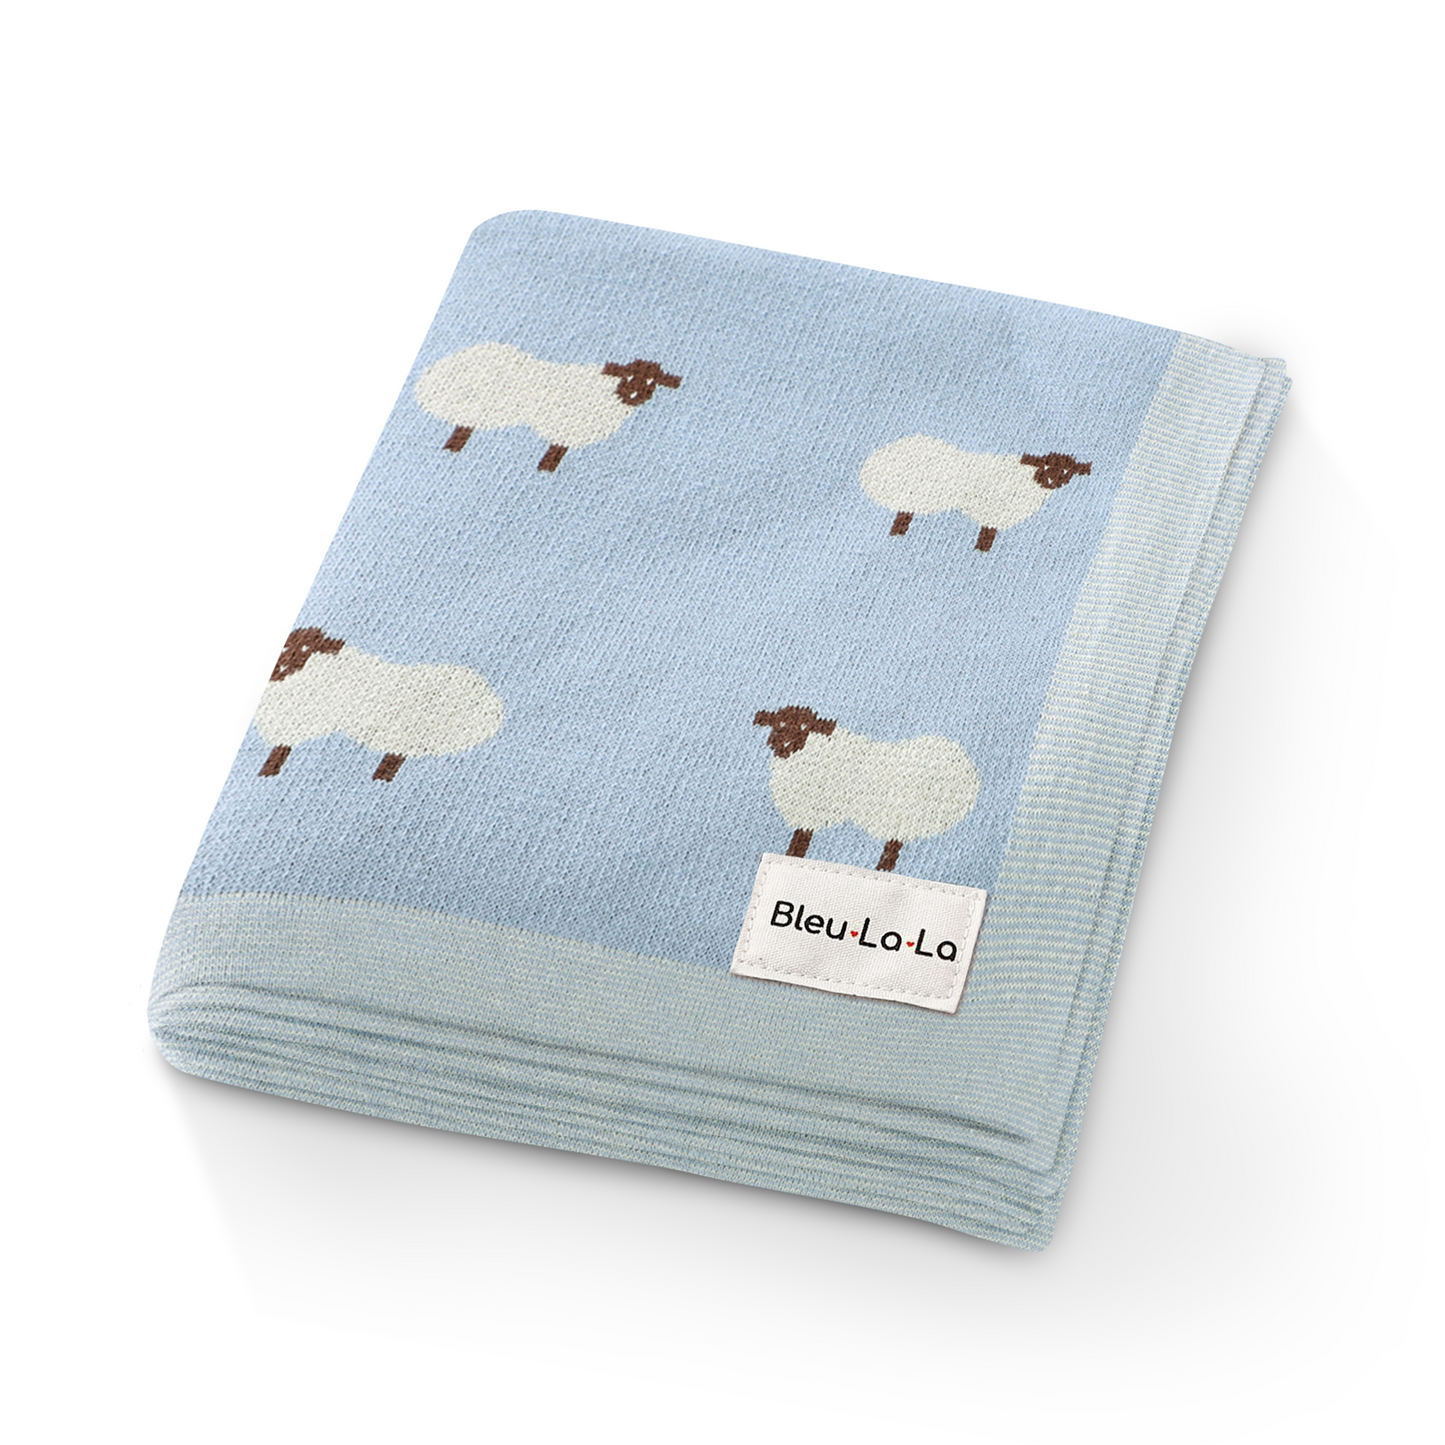 Sheep Knit Receiving Baby Blanket by Bleu La La